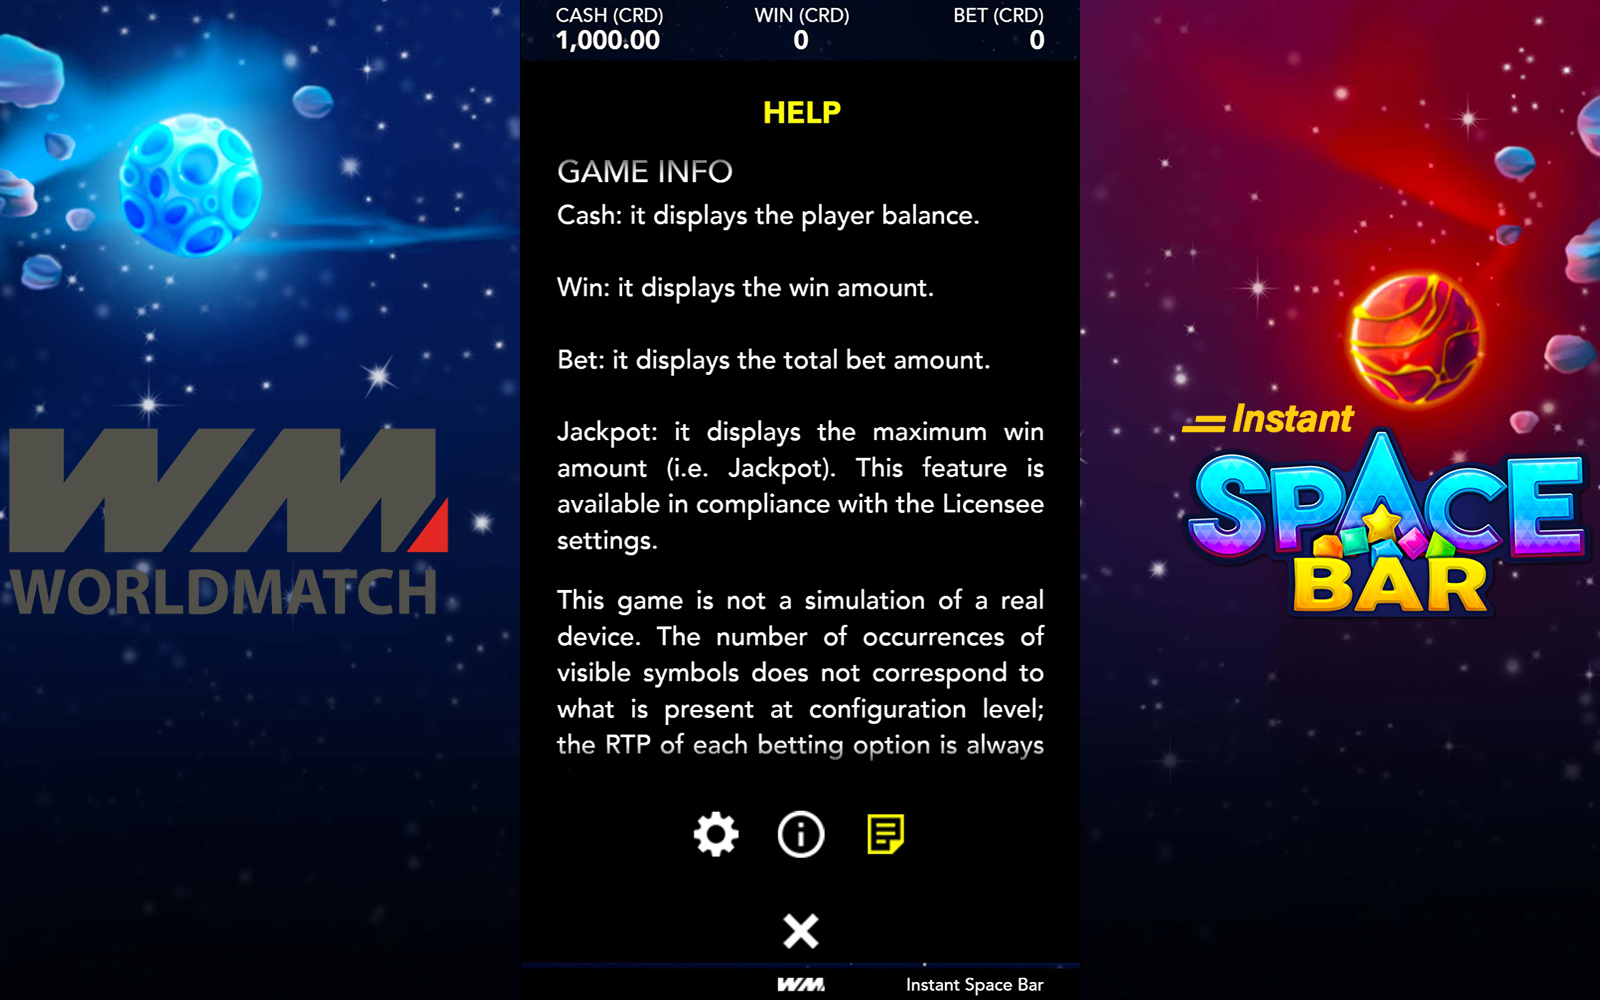 Informações sobre o jogo Instant Space Bar